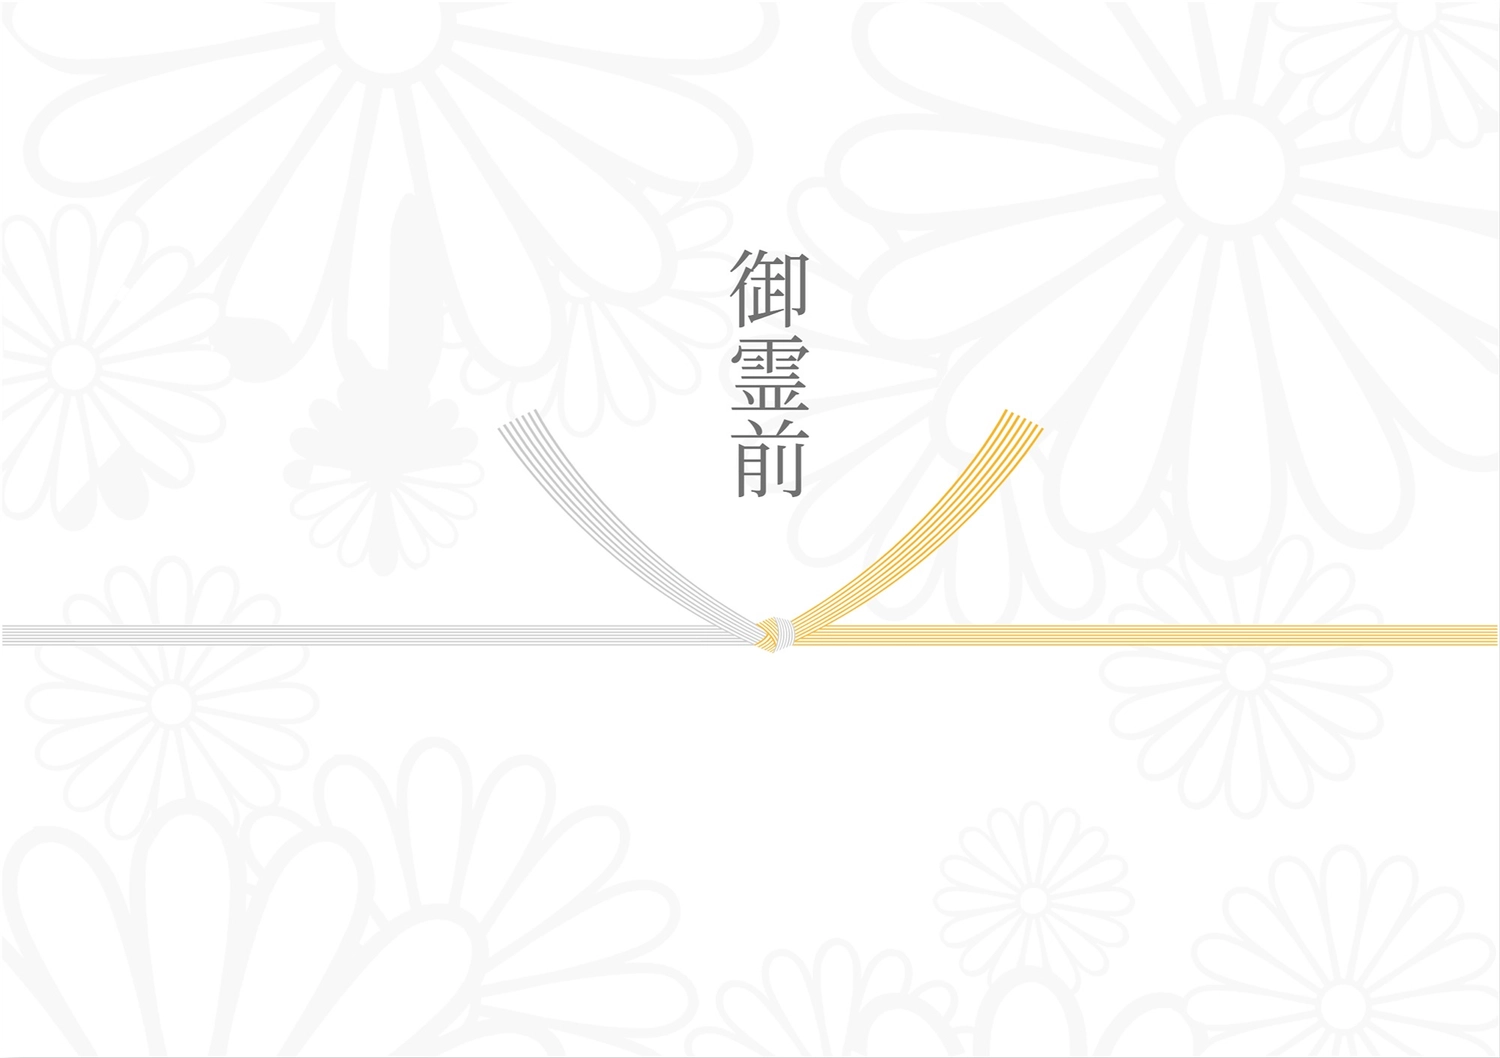 花柄のついた御霊前, Shinto ritual, in return, Condolences, Sales promotion tool template